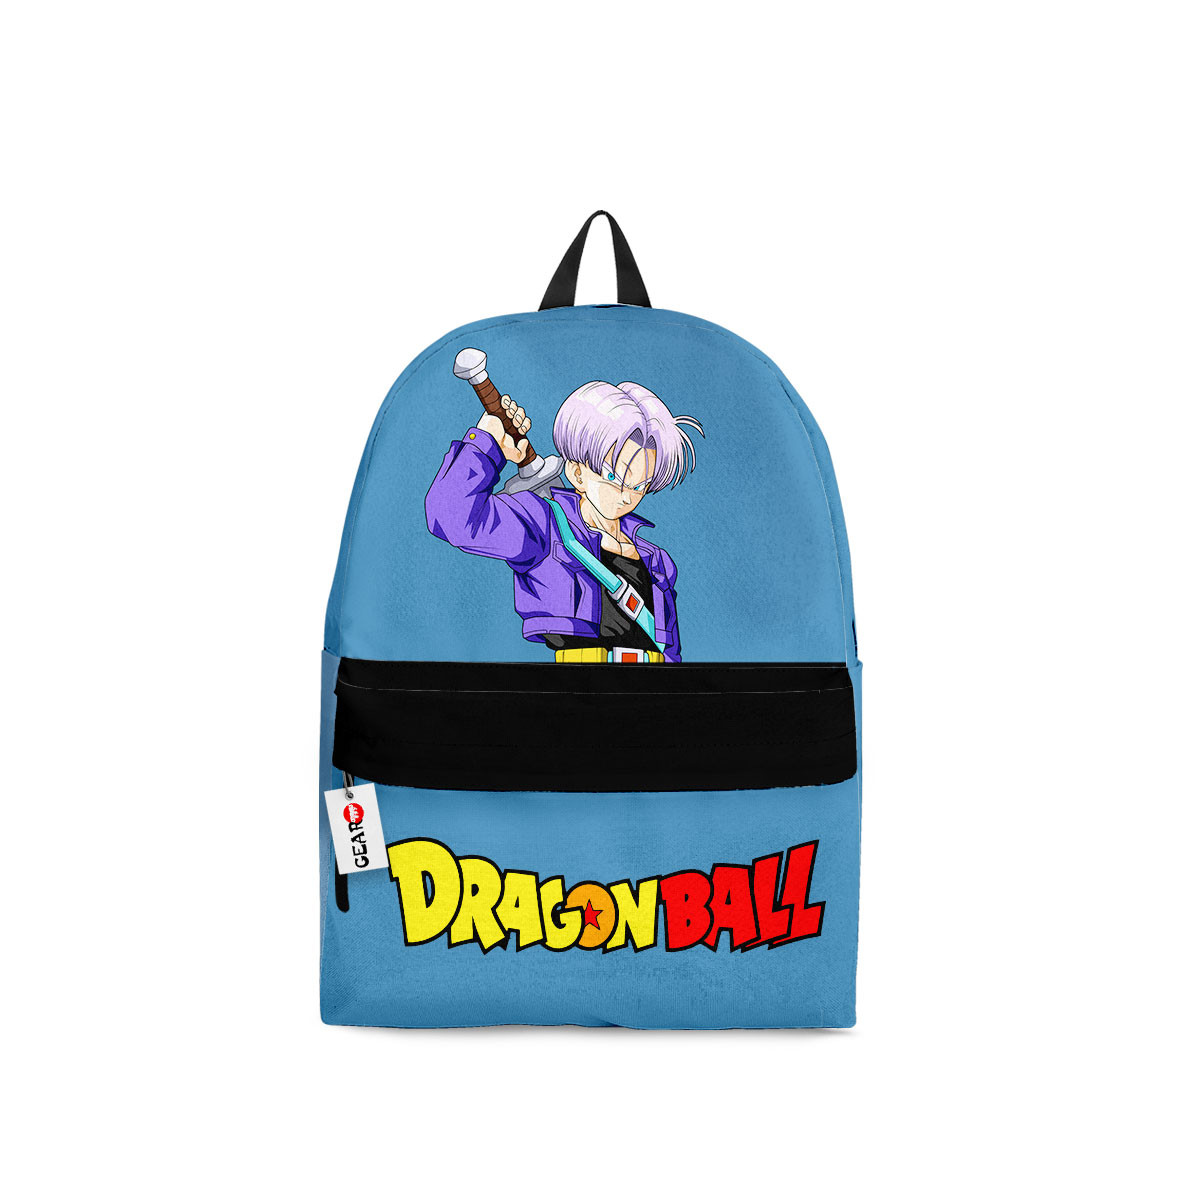 BEST Trunks Dragon Ball Anime Backpack Bag1